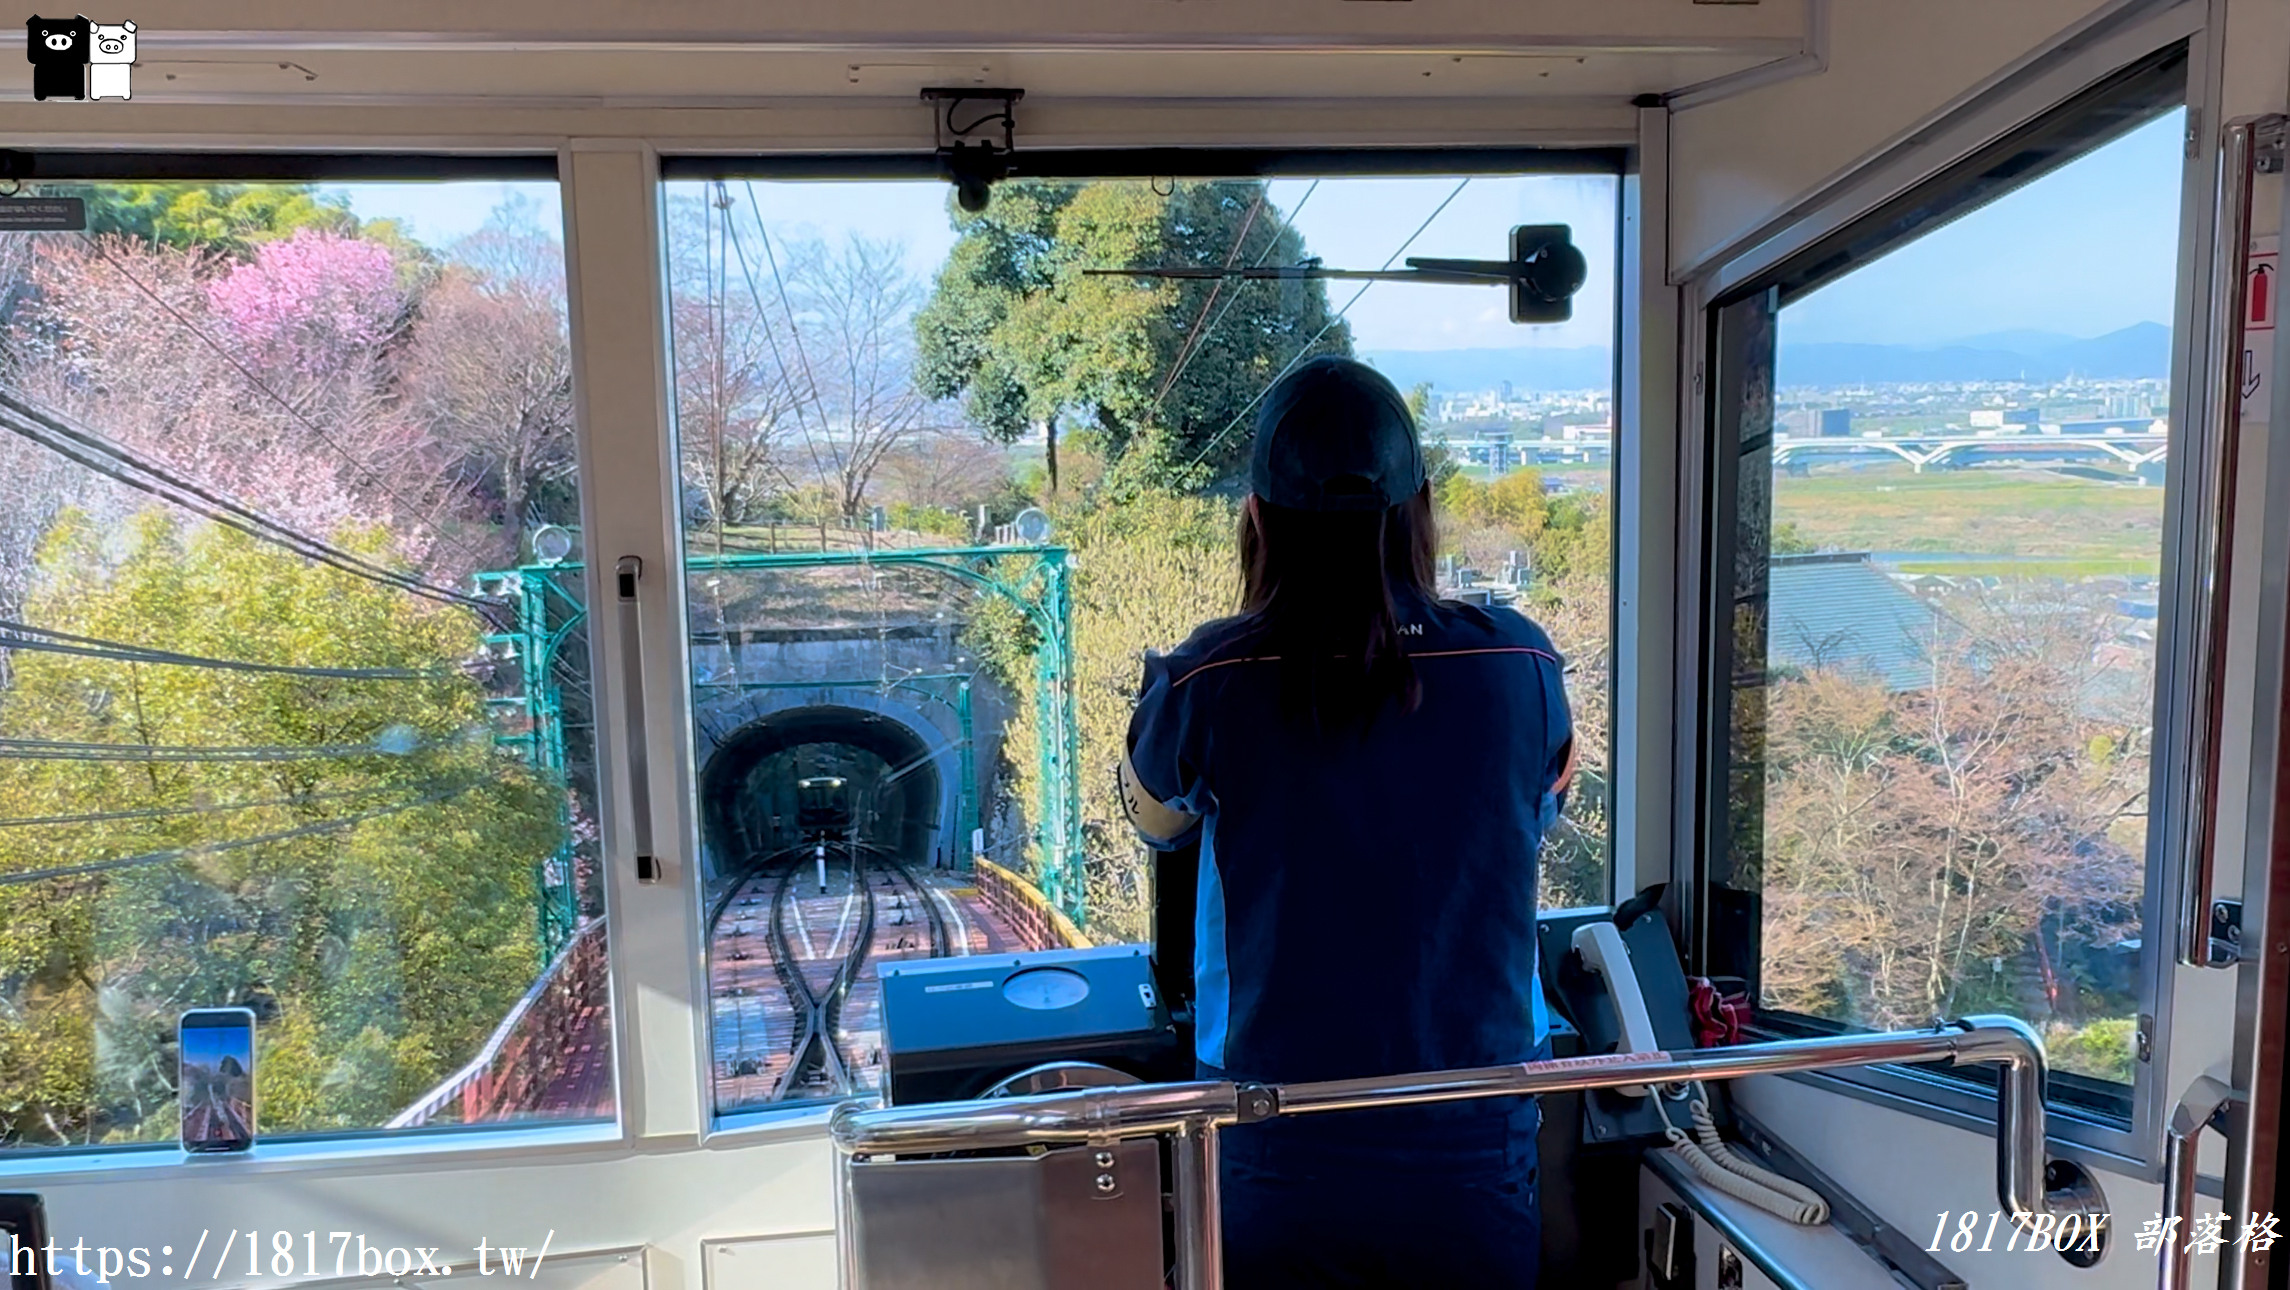 即時熱門文章：【京都景點】石清水八幡宮參道纜車。從車窗欣賞京都以南景色